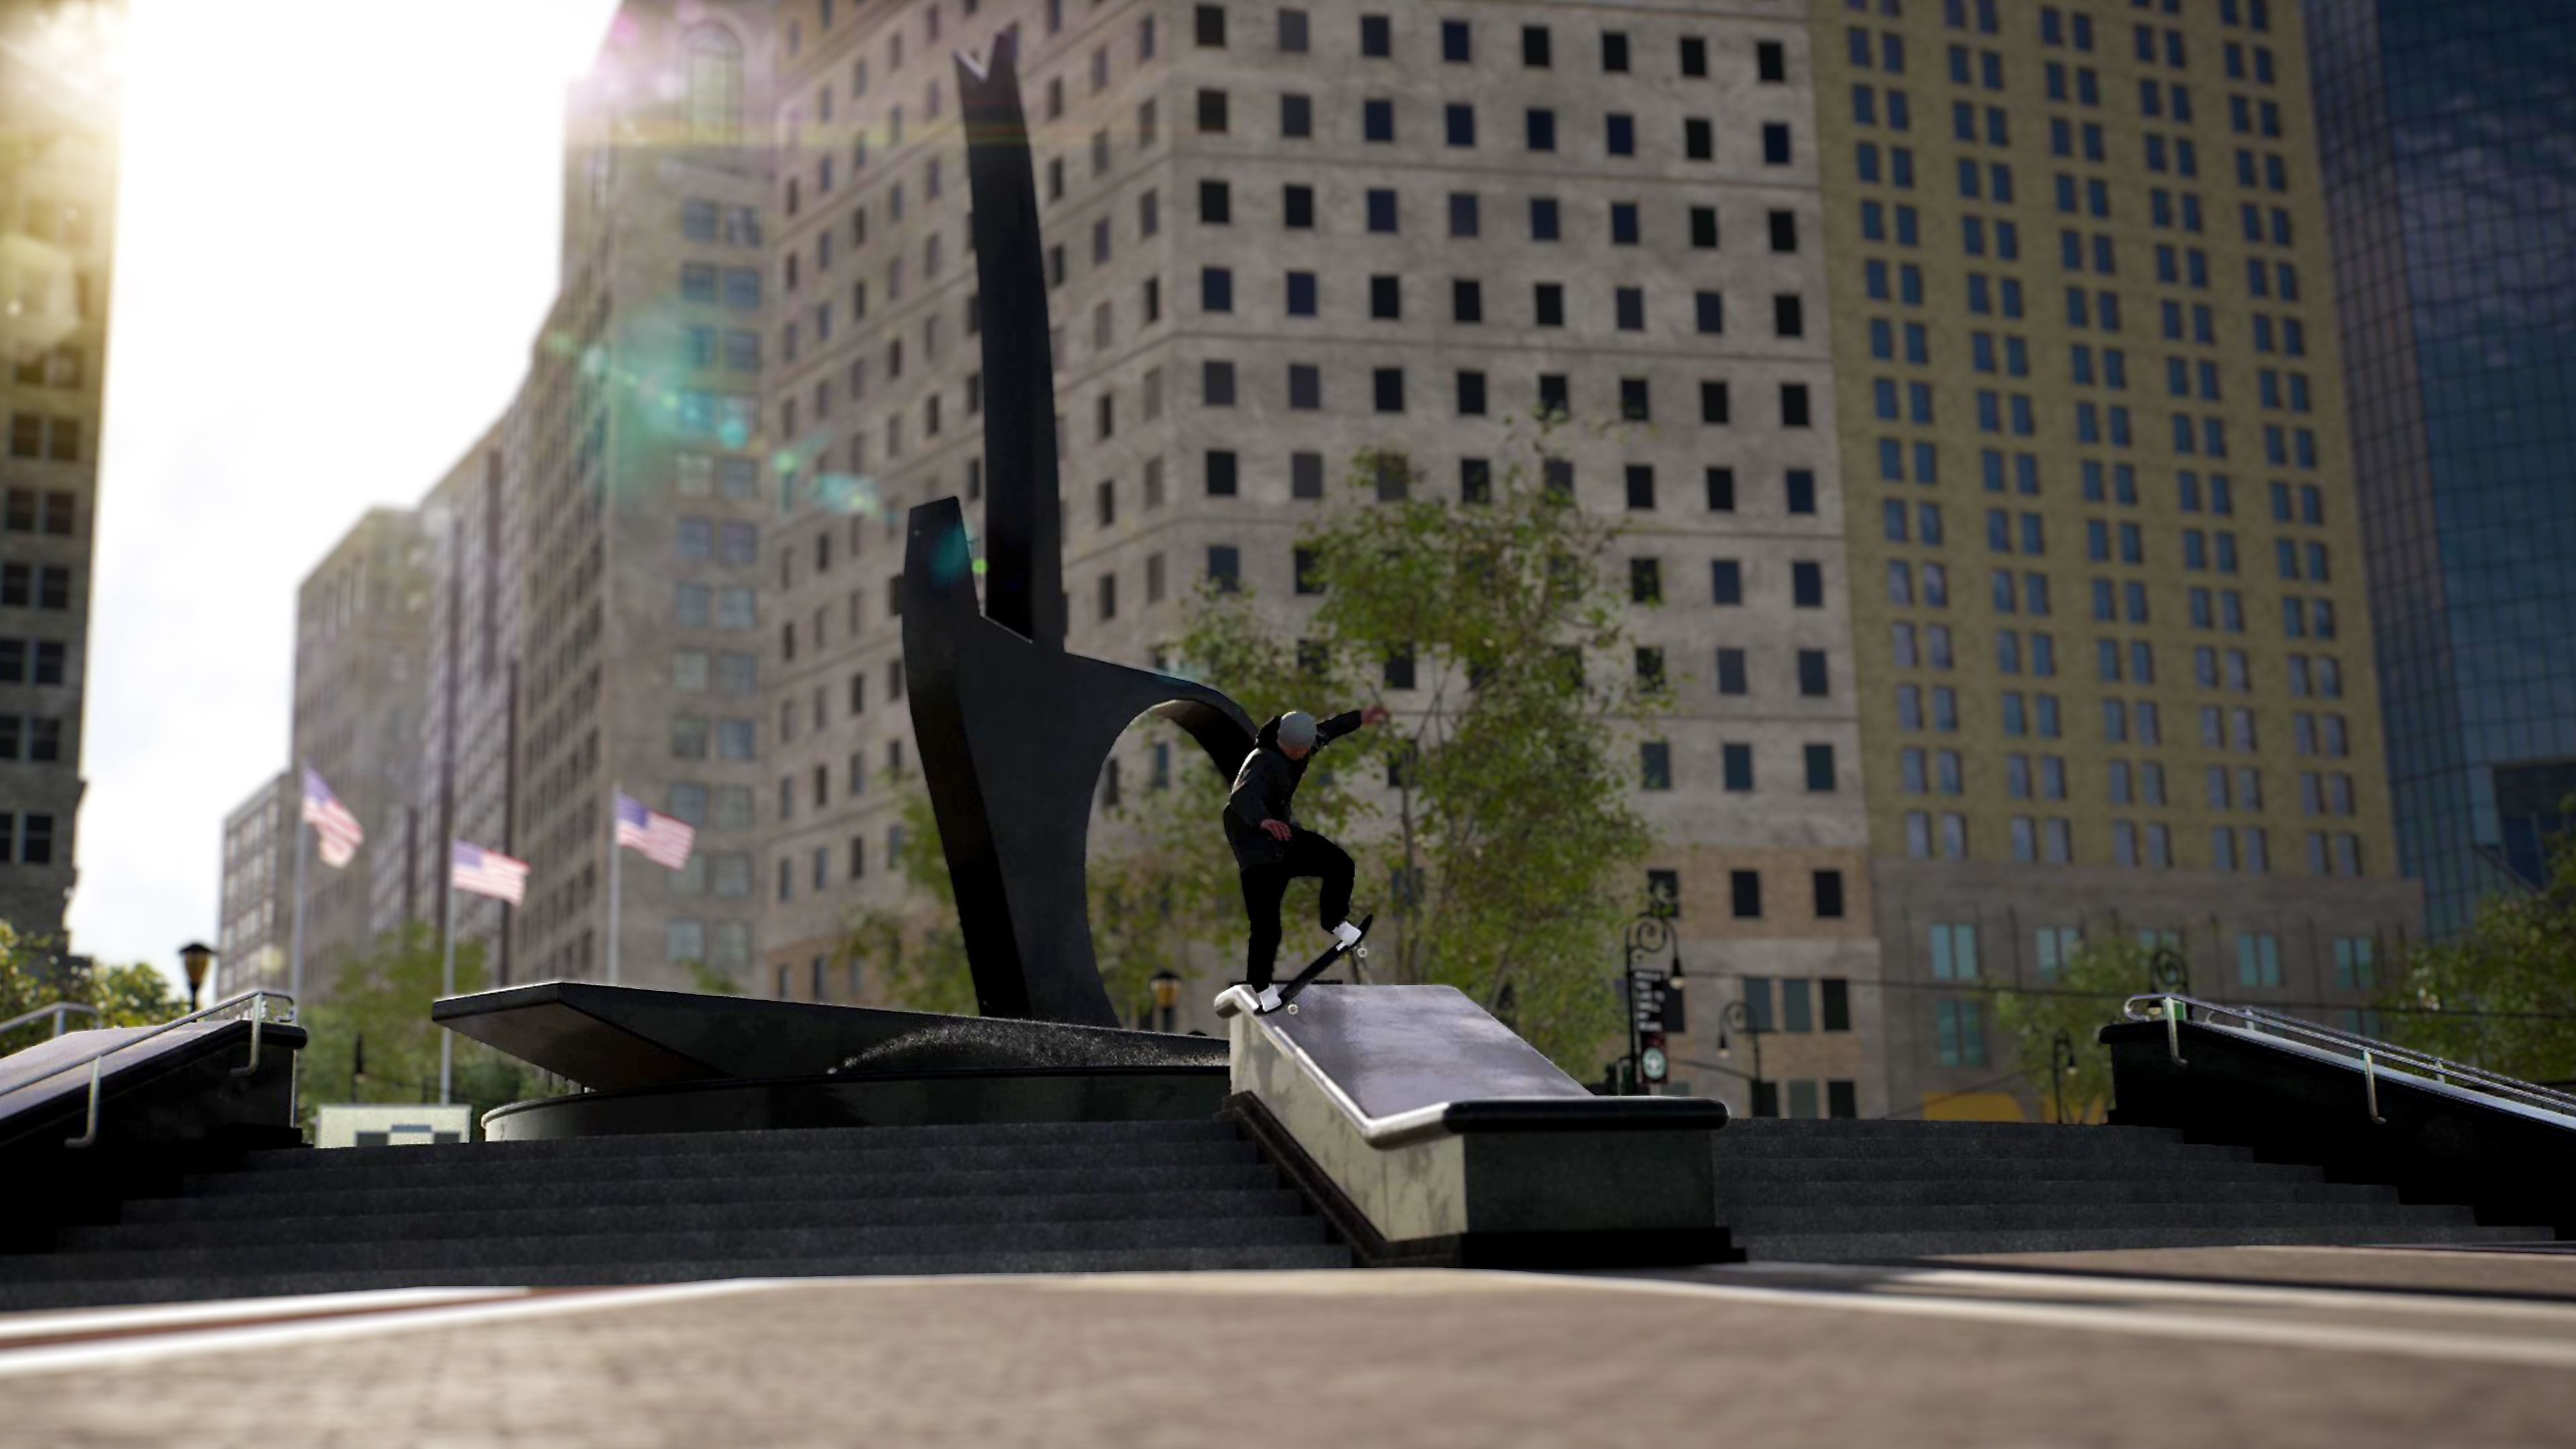 Session: Skate Sim - captura de tela mostrando skatista deslizando por uma beirada em praça de cidade